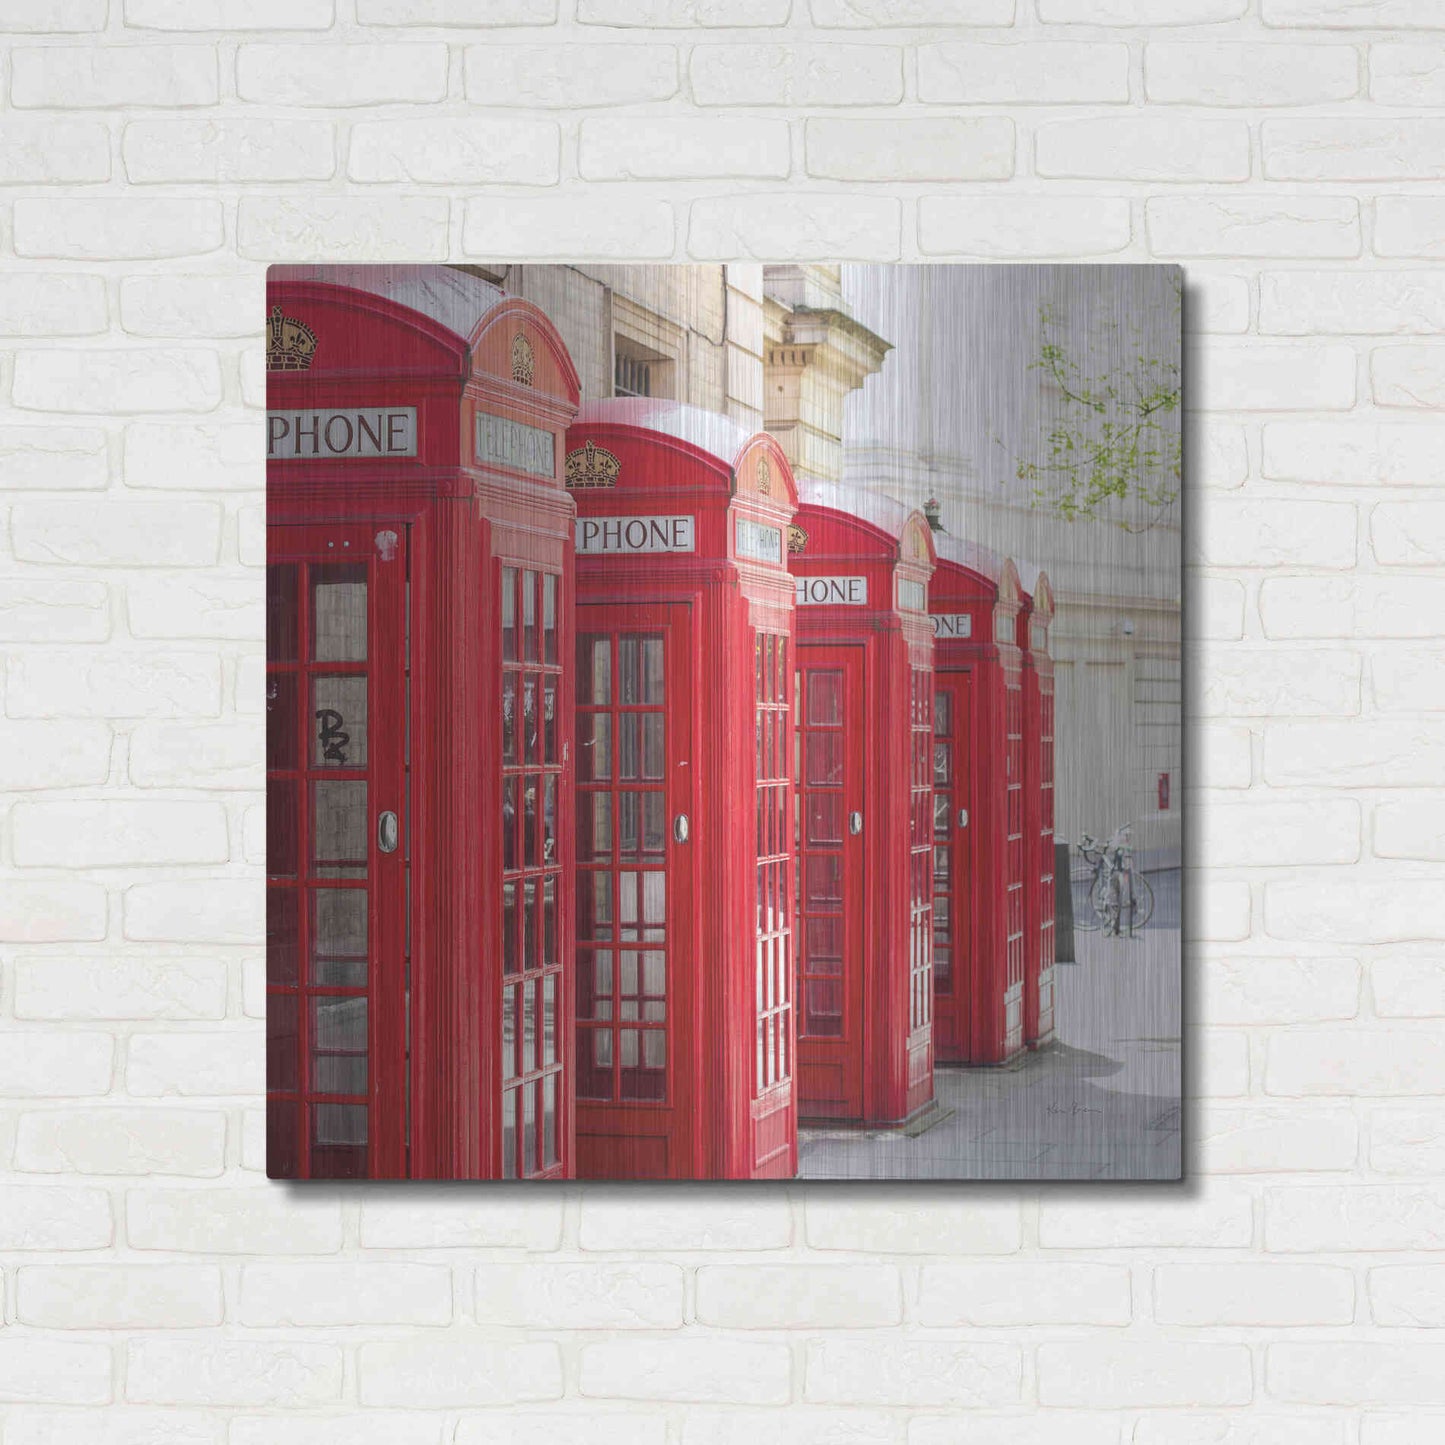 Luxe Metal Art 'Covent Garden Phone Boxes' by Keri Bevan, Metal Wall Art,36x36